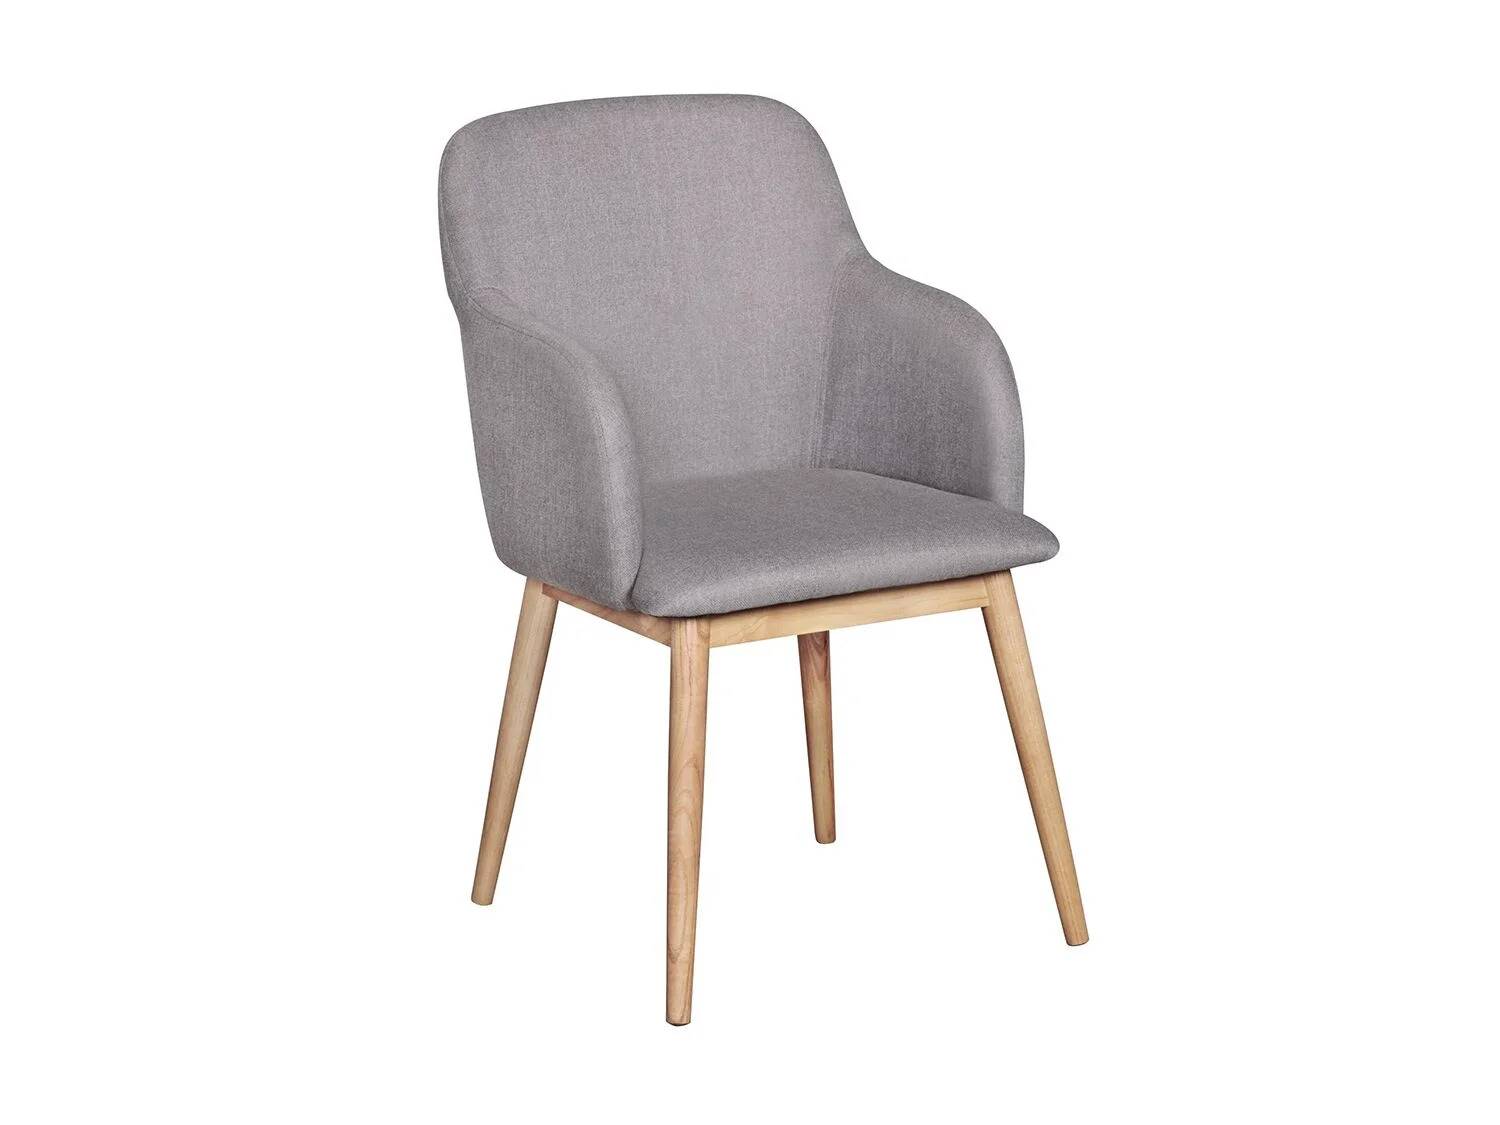 Muebles lidl: wohnling silla de comedor con reposabrazos. 